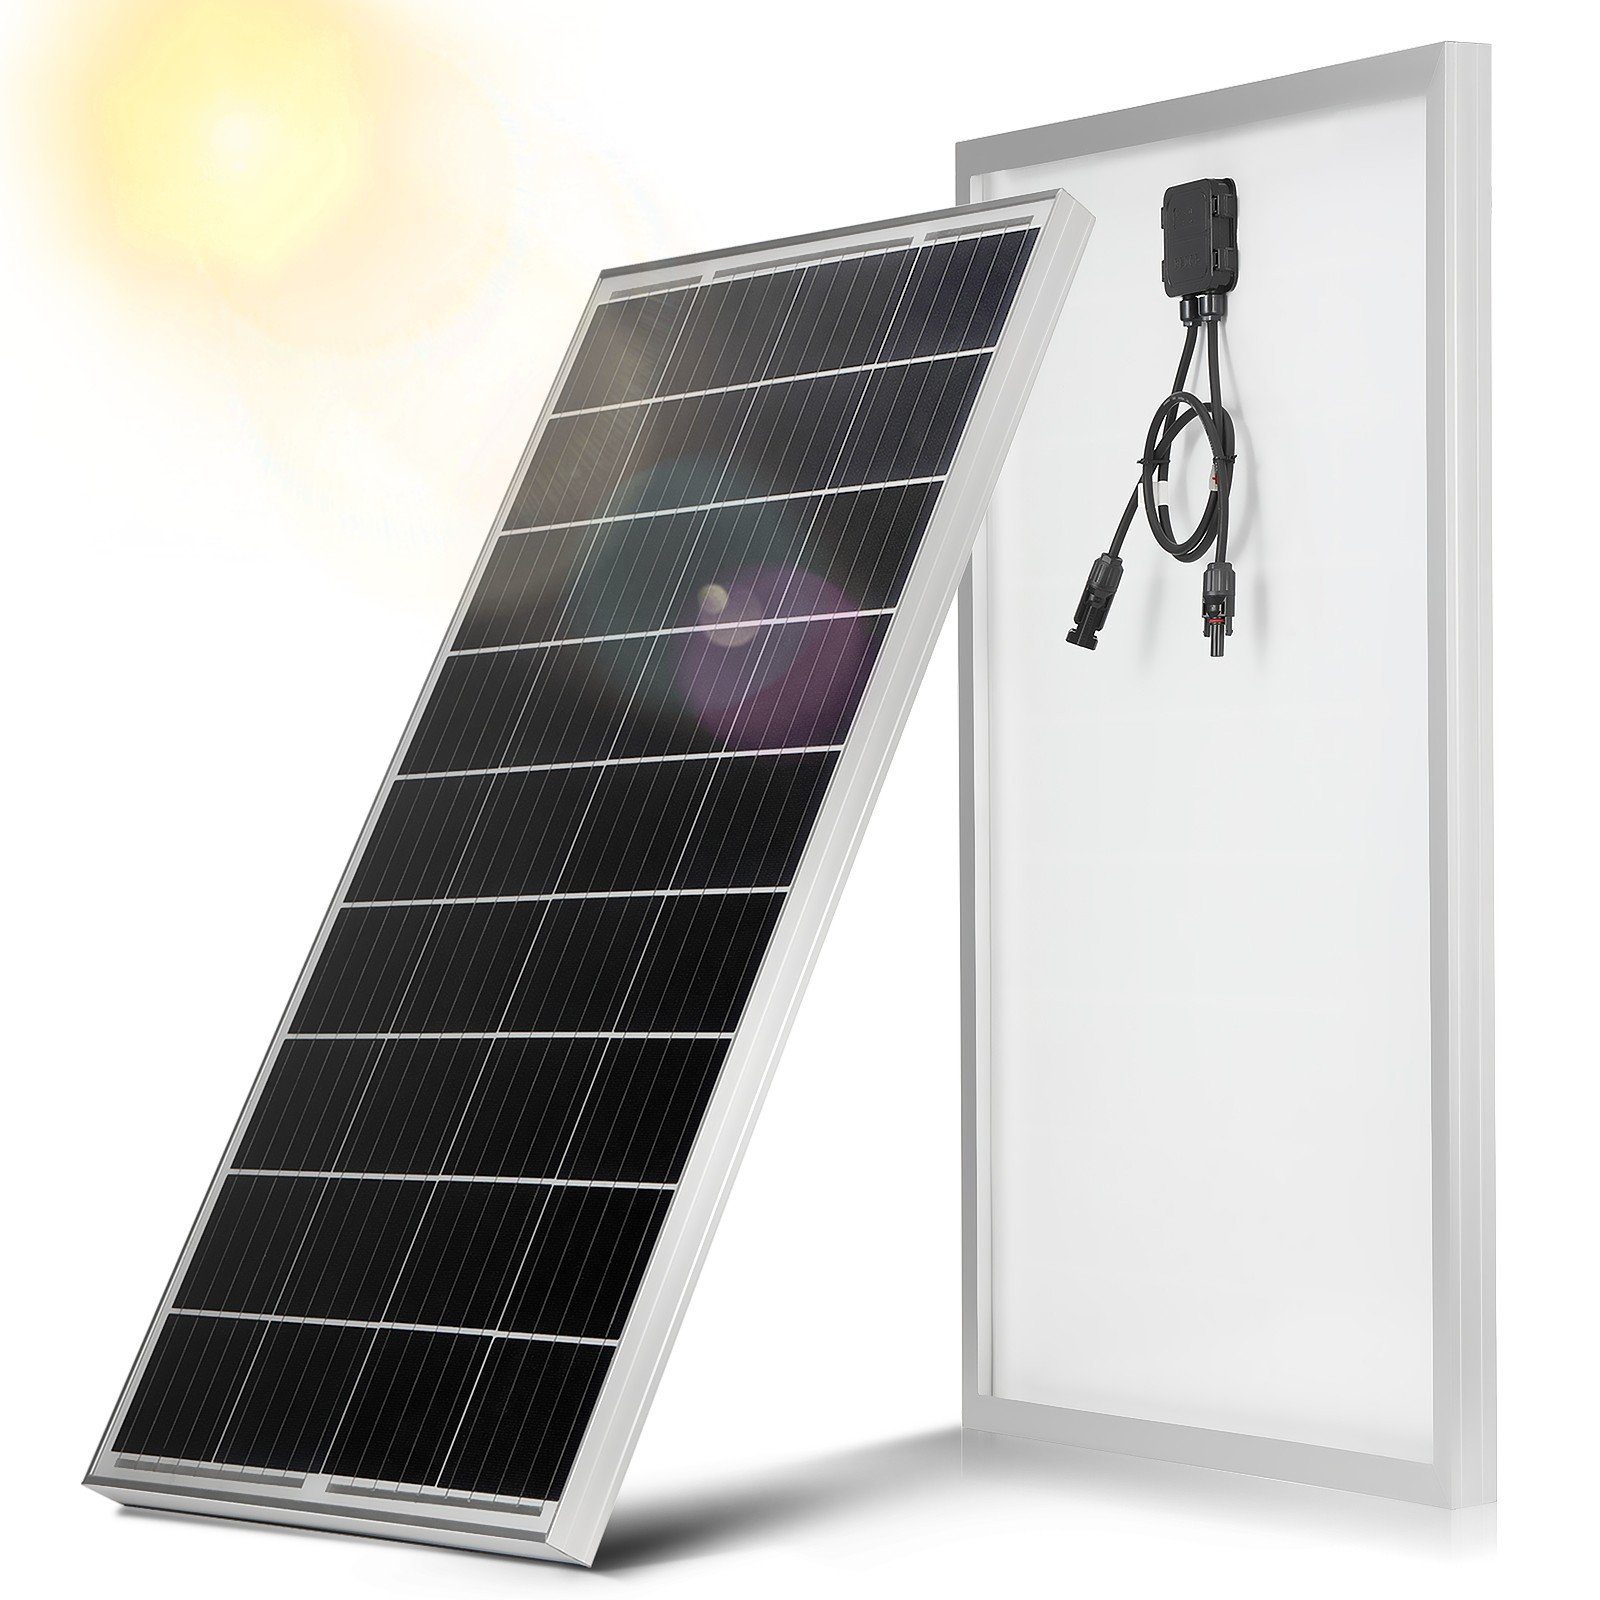 LETGOSPT Solarmodul 100W / 150W 18V Solarmodul Monokristallin Solarpanel  Photovoltaik, Ideal zum Aufladen von Batterien Wohnmobil Garten Camper